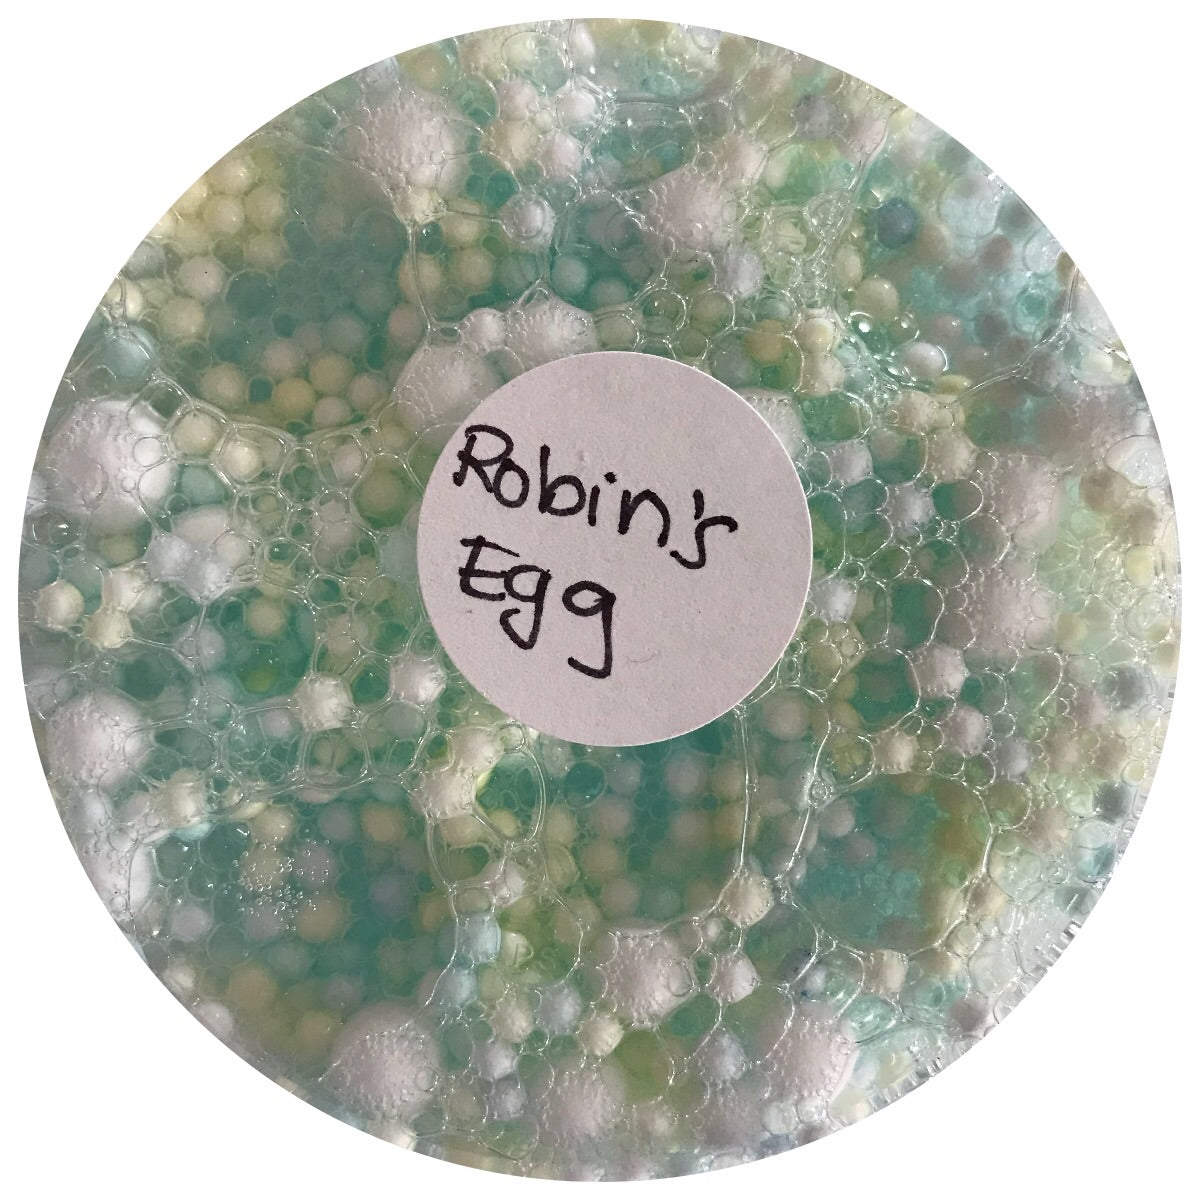 Robin’s Egg